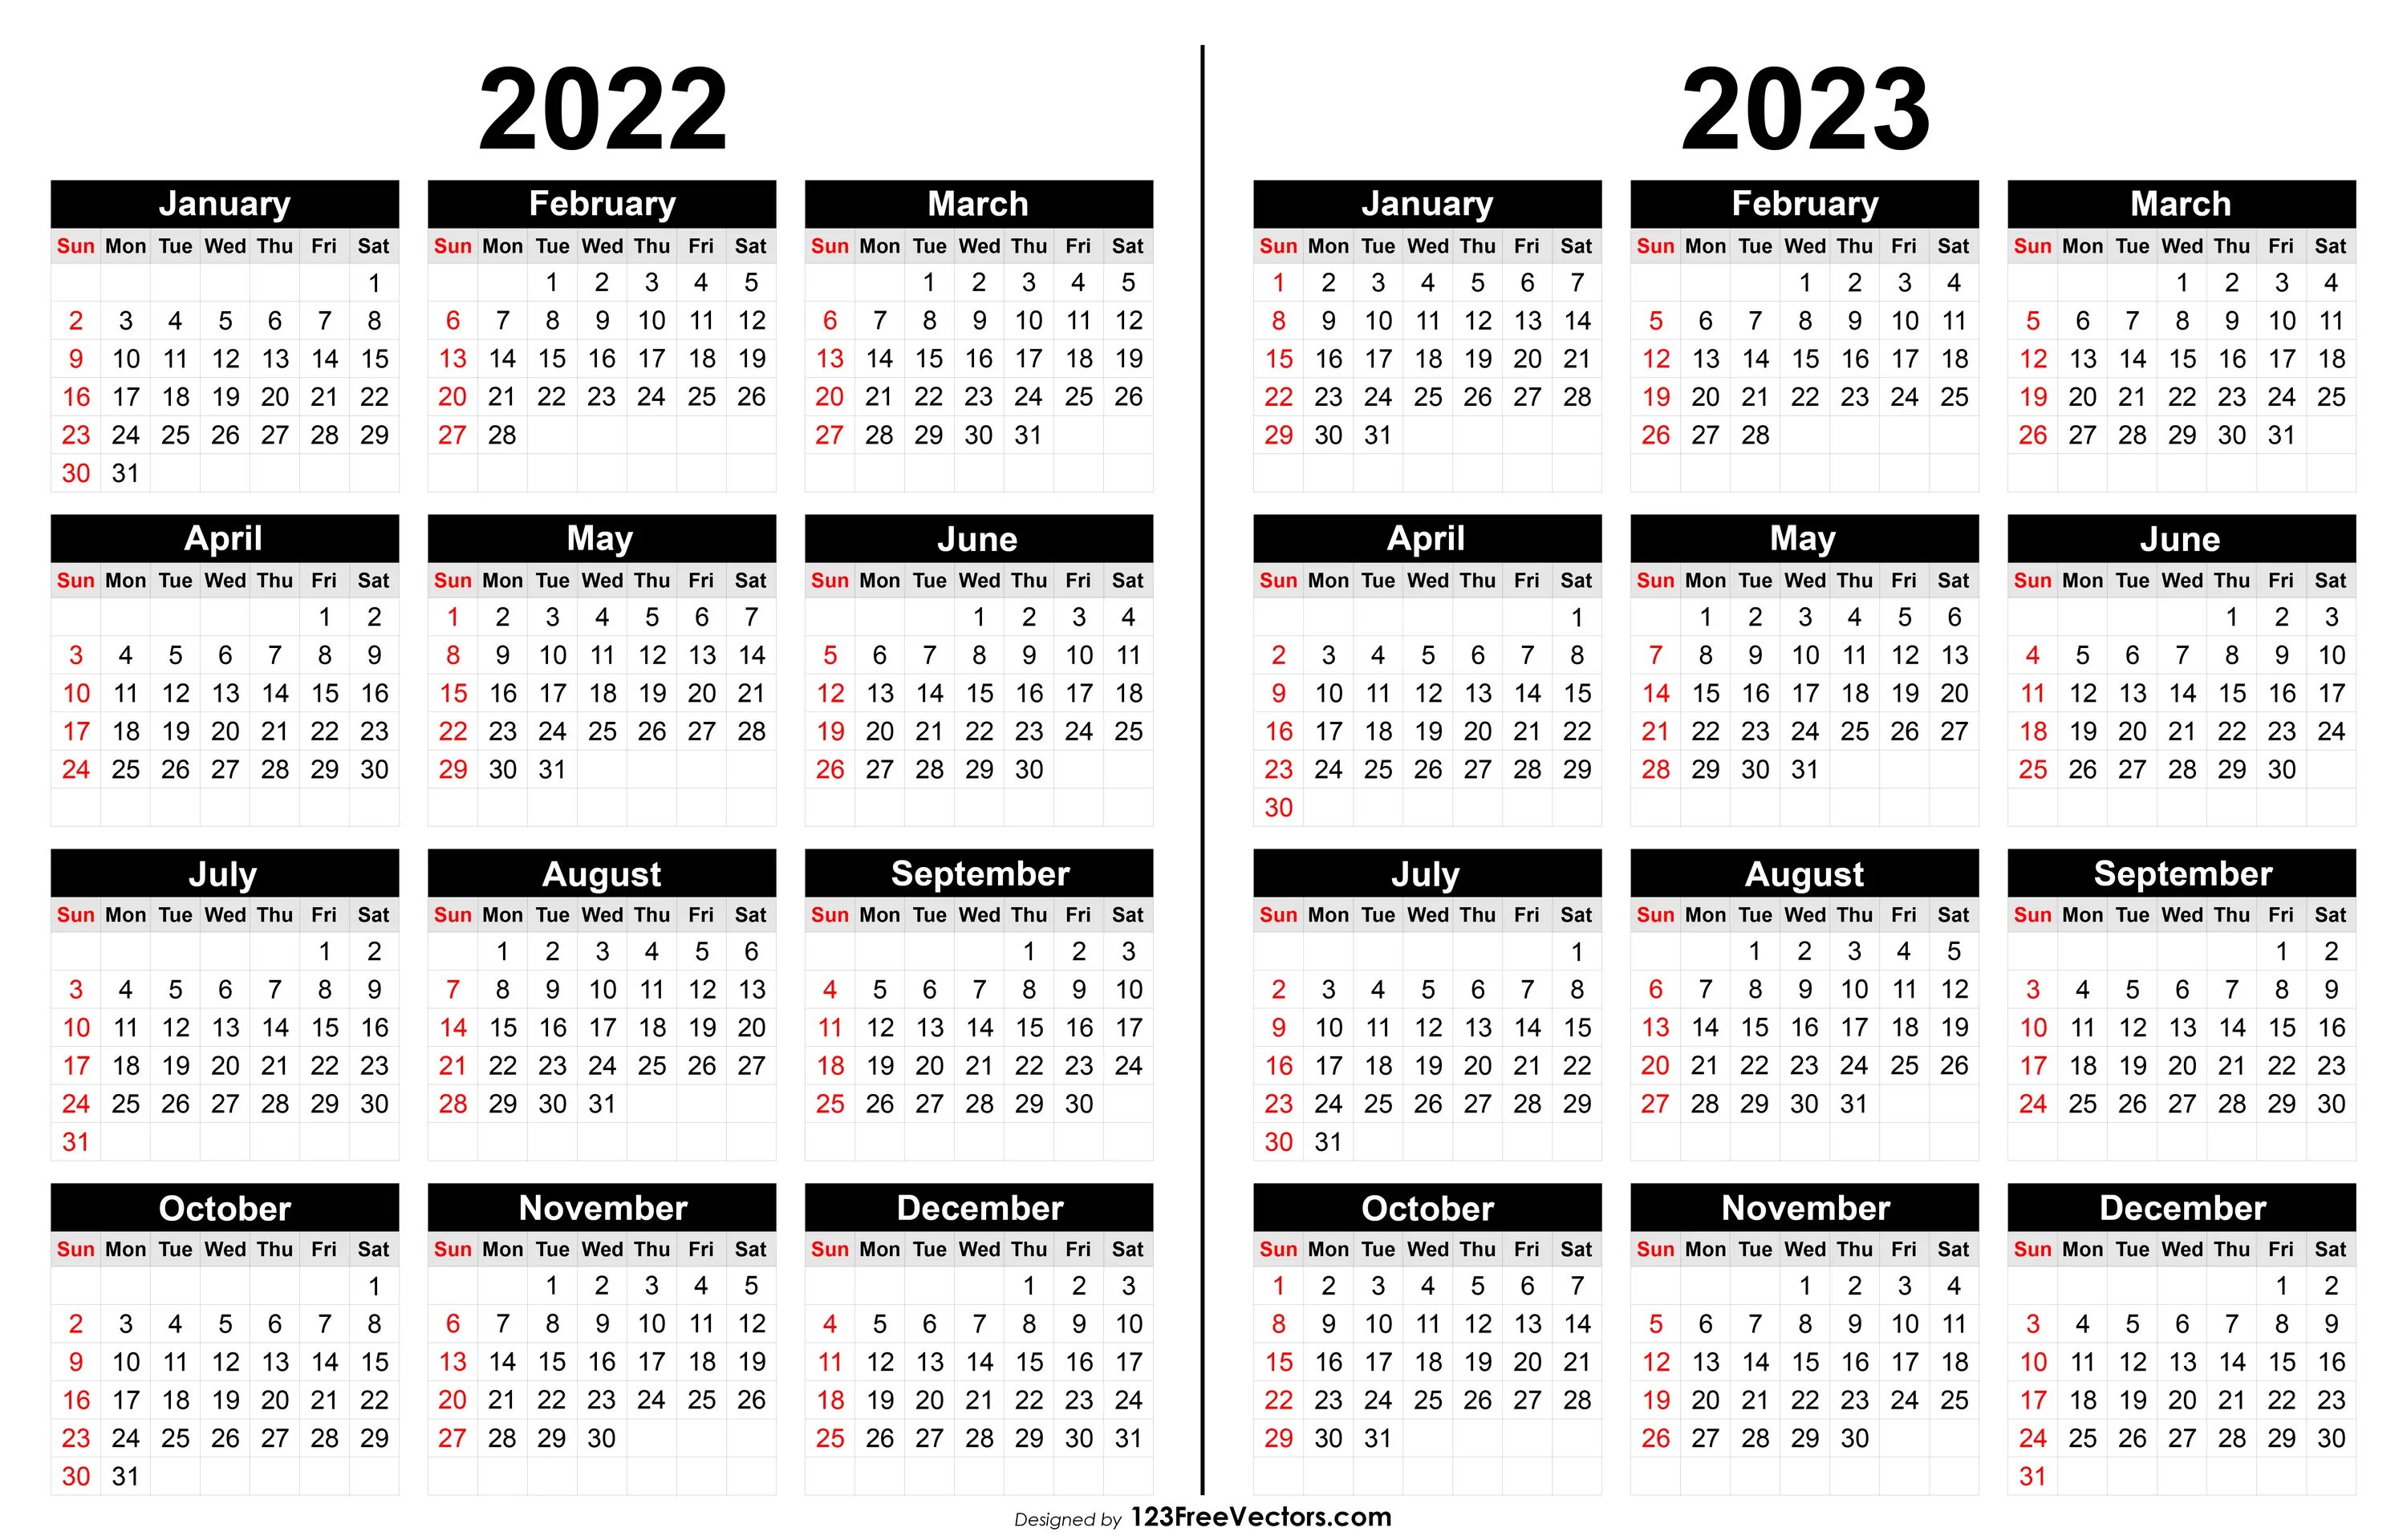 Календарь 2019 2020 2021 2022. Мини календарь 2022 2023. Календарь 2019 2020 2021 года. Календарь 2020-2021 печатать.